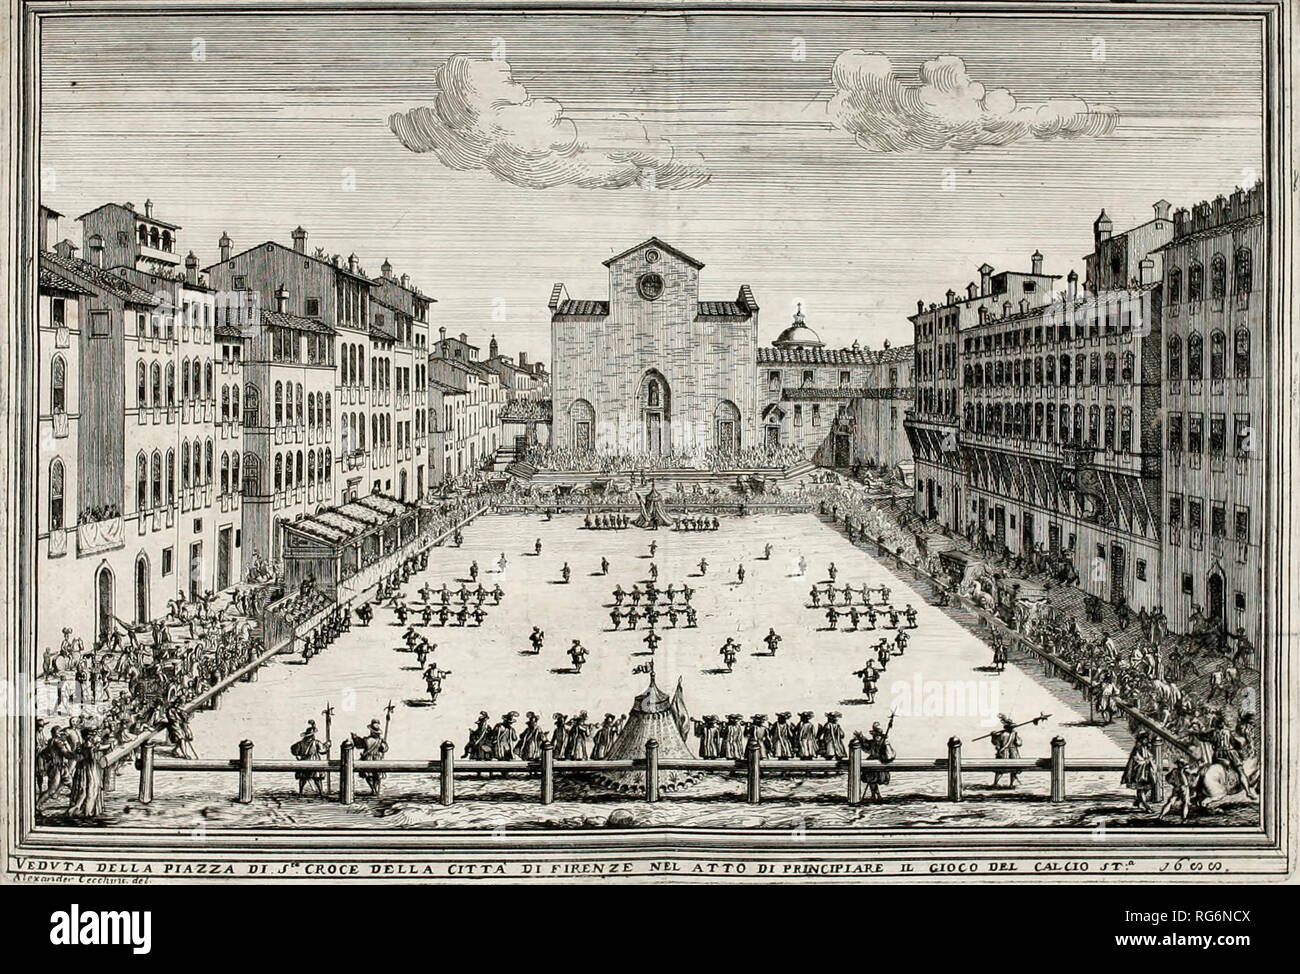 Un Calcio Fiorentino (Football historique) match joué à Piazza Santa Croce, Florence, Italie, vers 1688 Banque D'Images